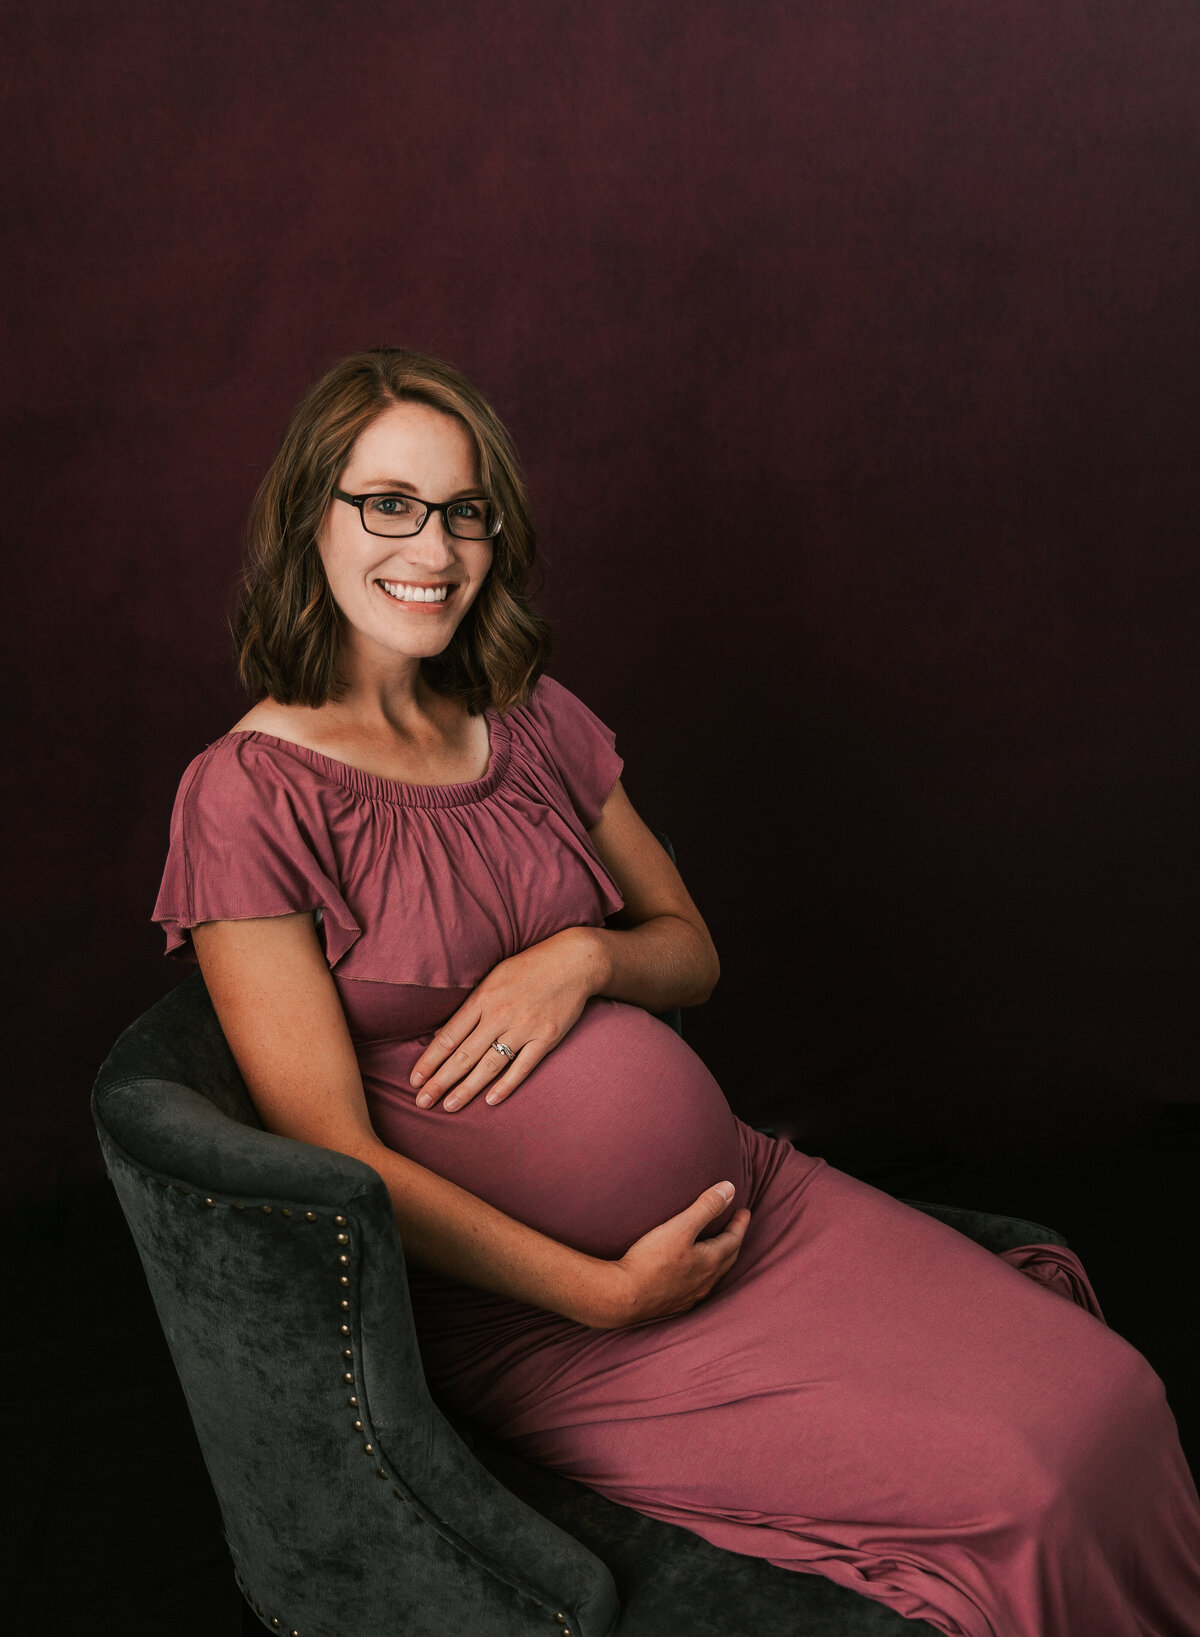 Elk Ridge Utah maternity photo studio.